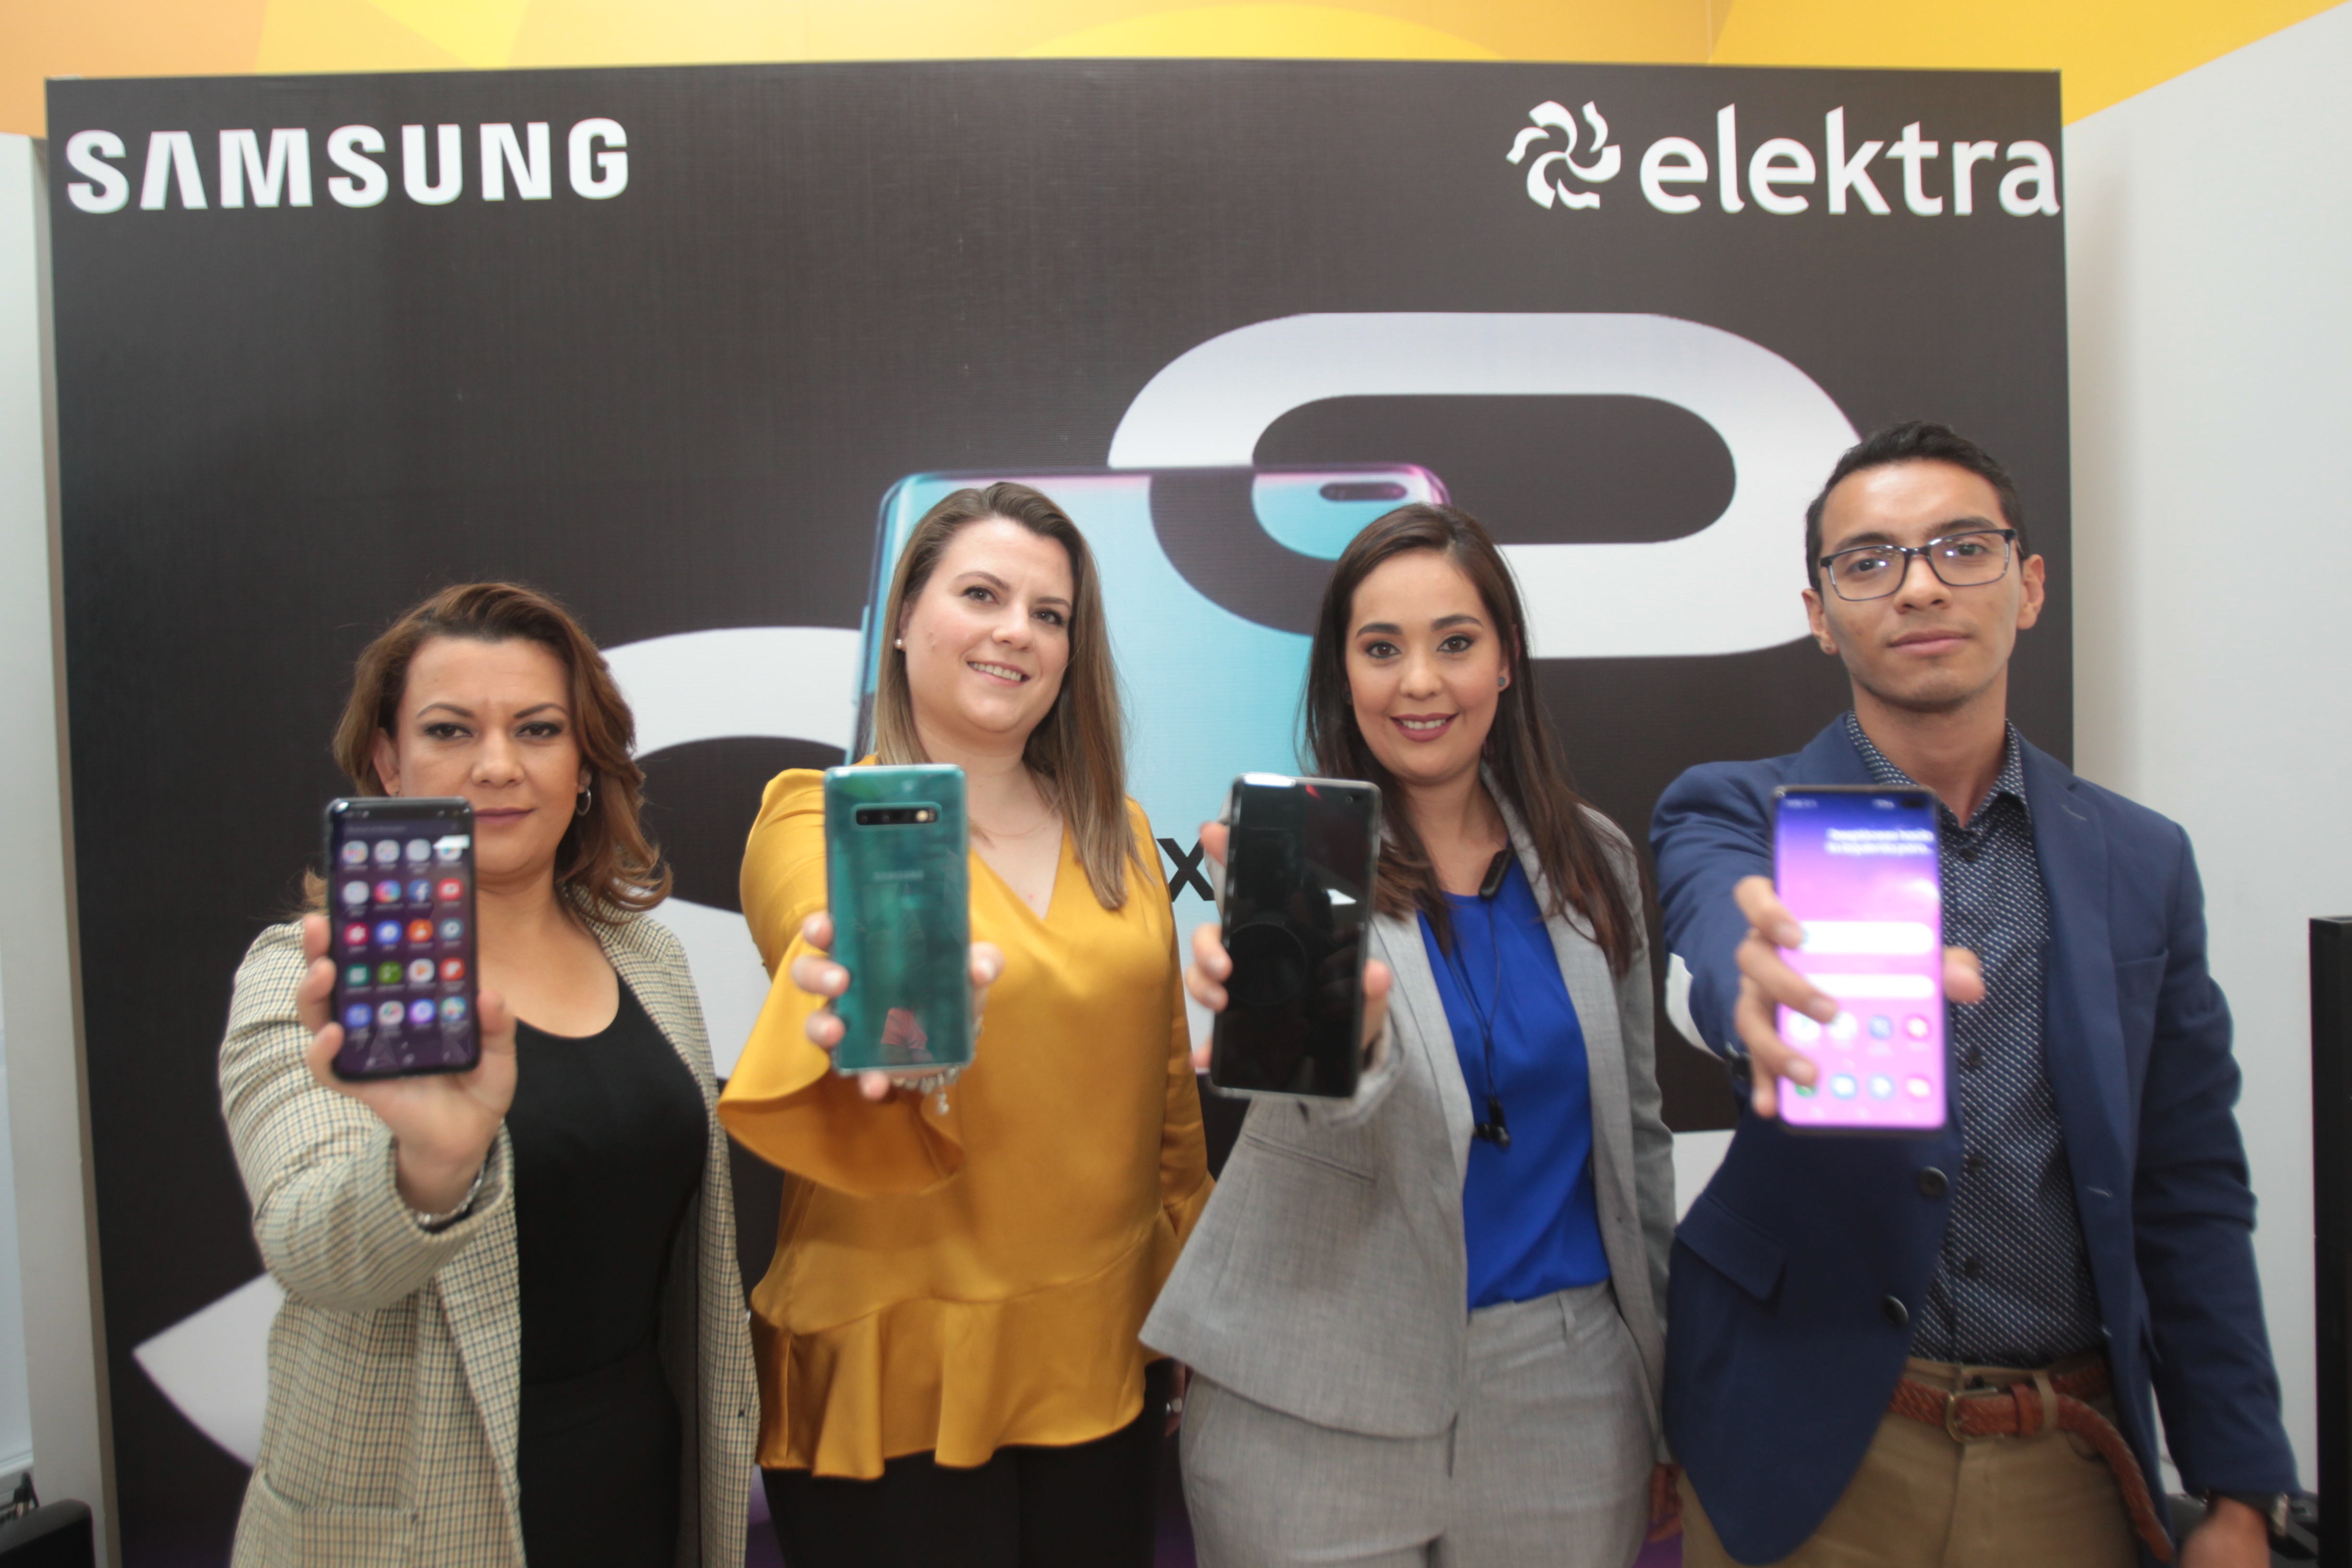 Personeros de Elektra y Samsung presentaron la nueva gama de celulares Samsung Galaxy S10